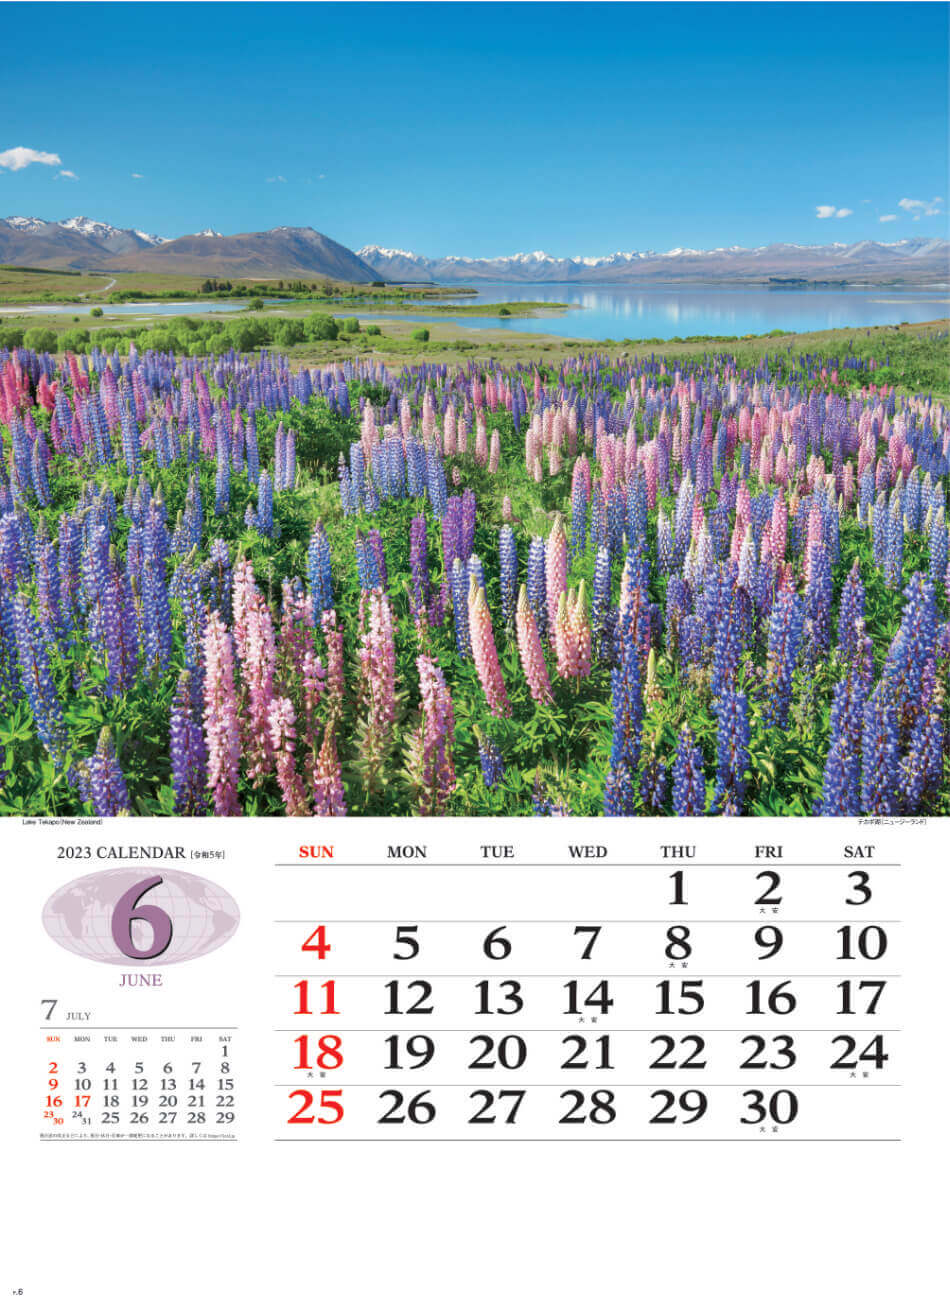 6月 テカポ湖(ニュージーランド) 世界の景観 2023年カレンダーの画像